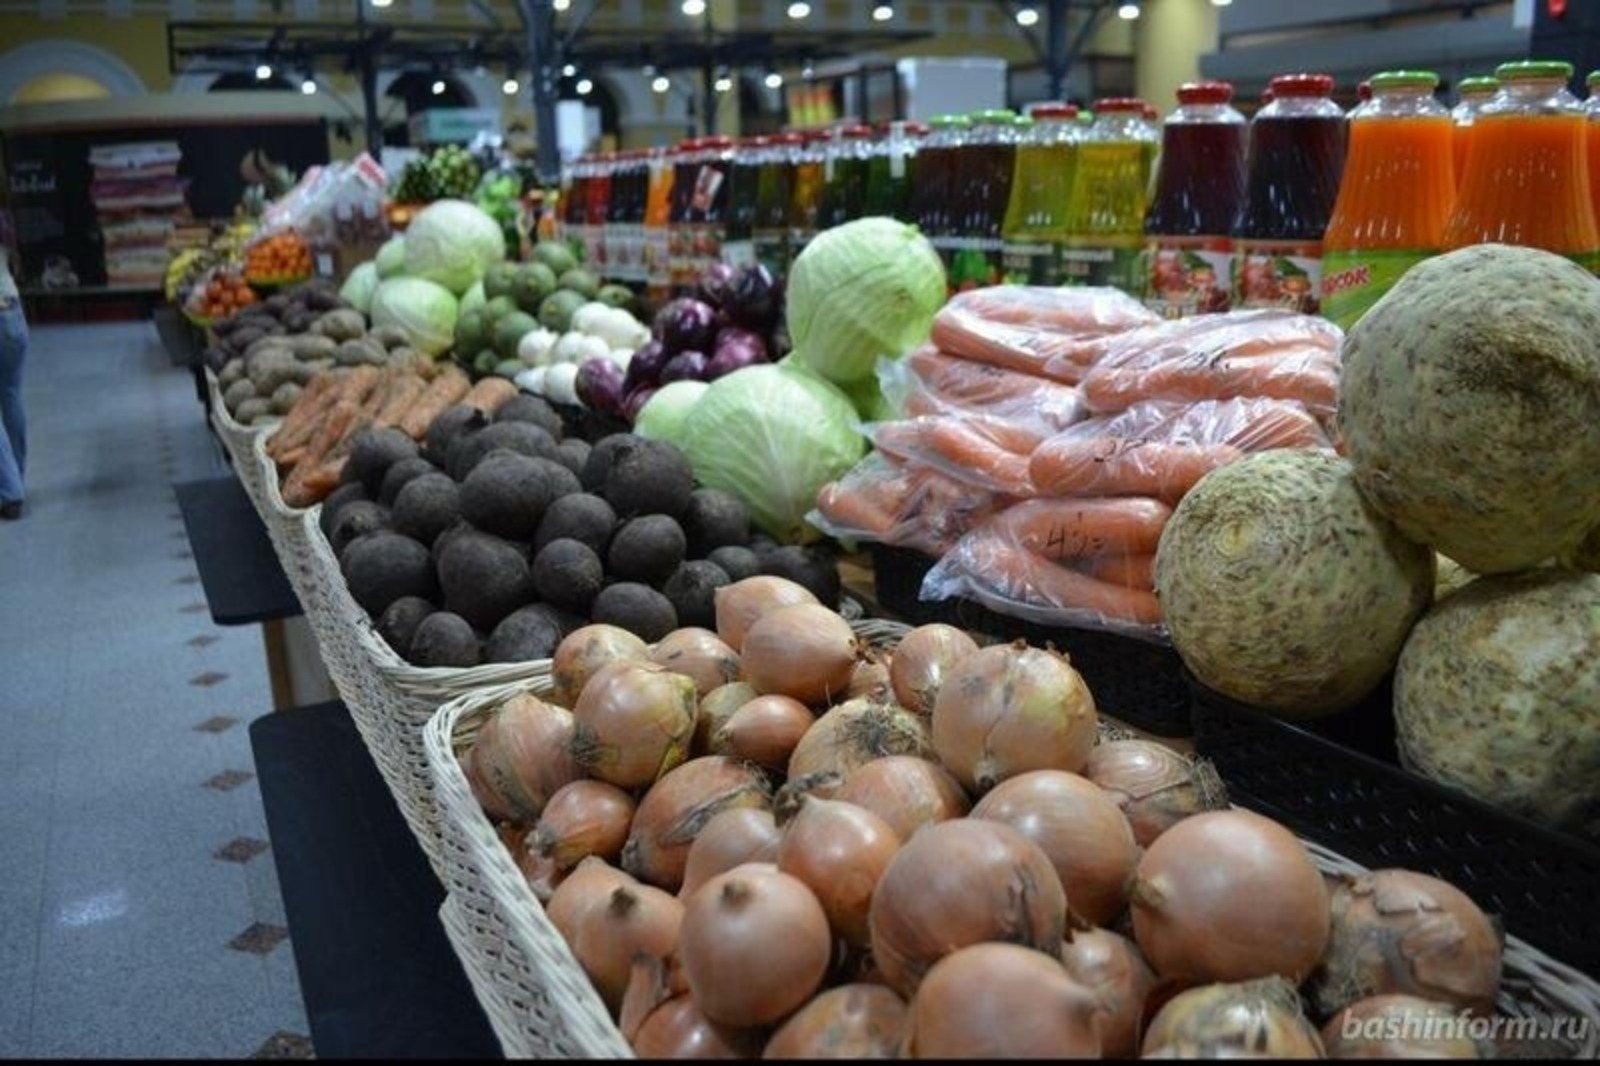 Цены на продукты в Башкирии стабилизировались